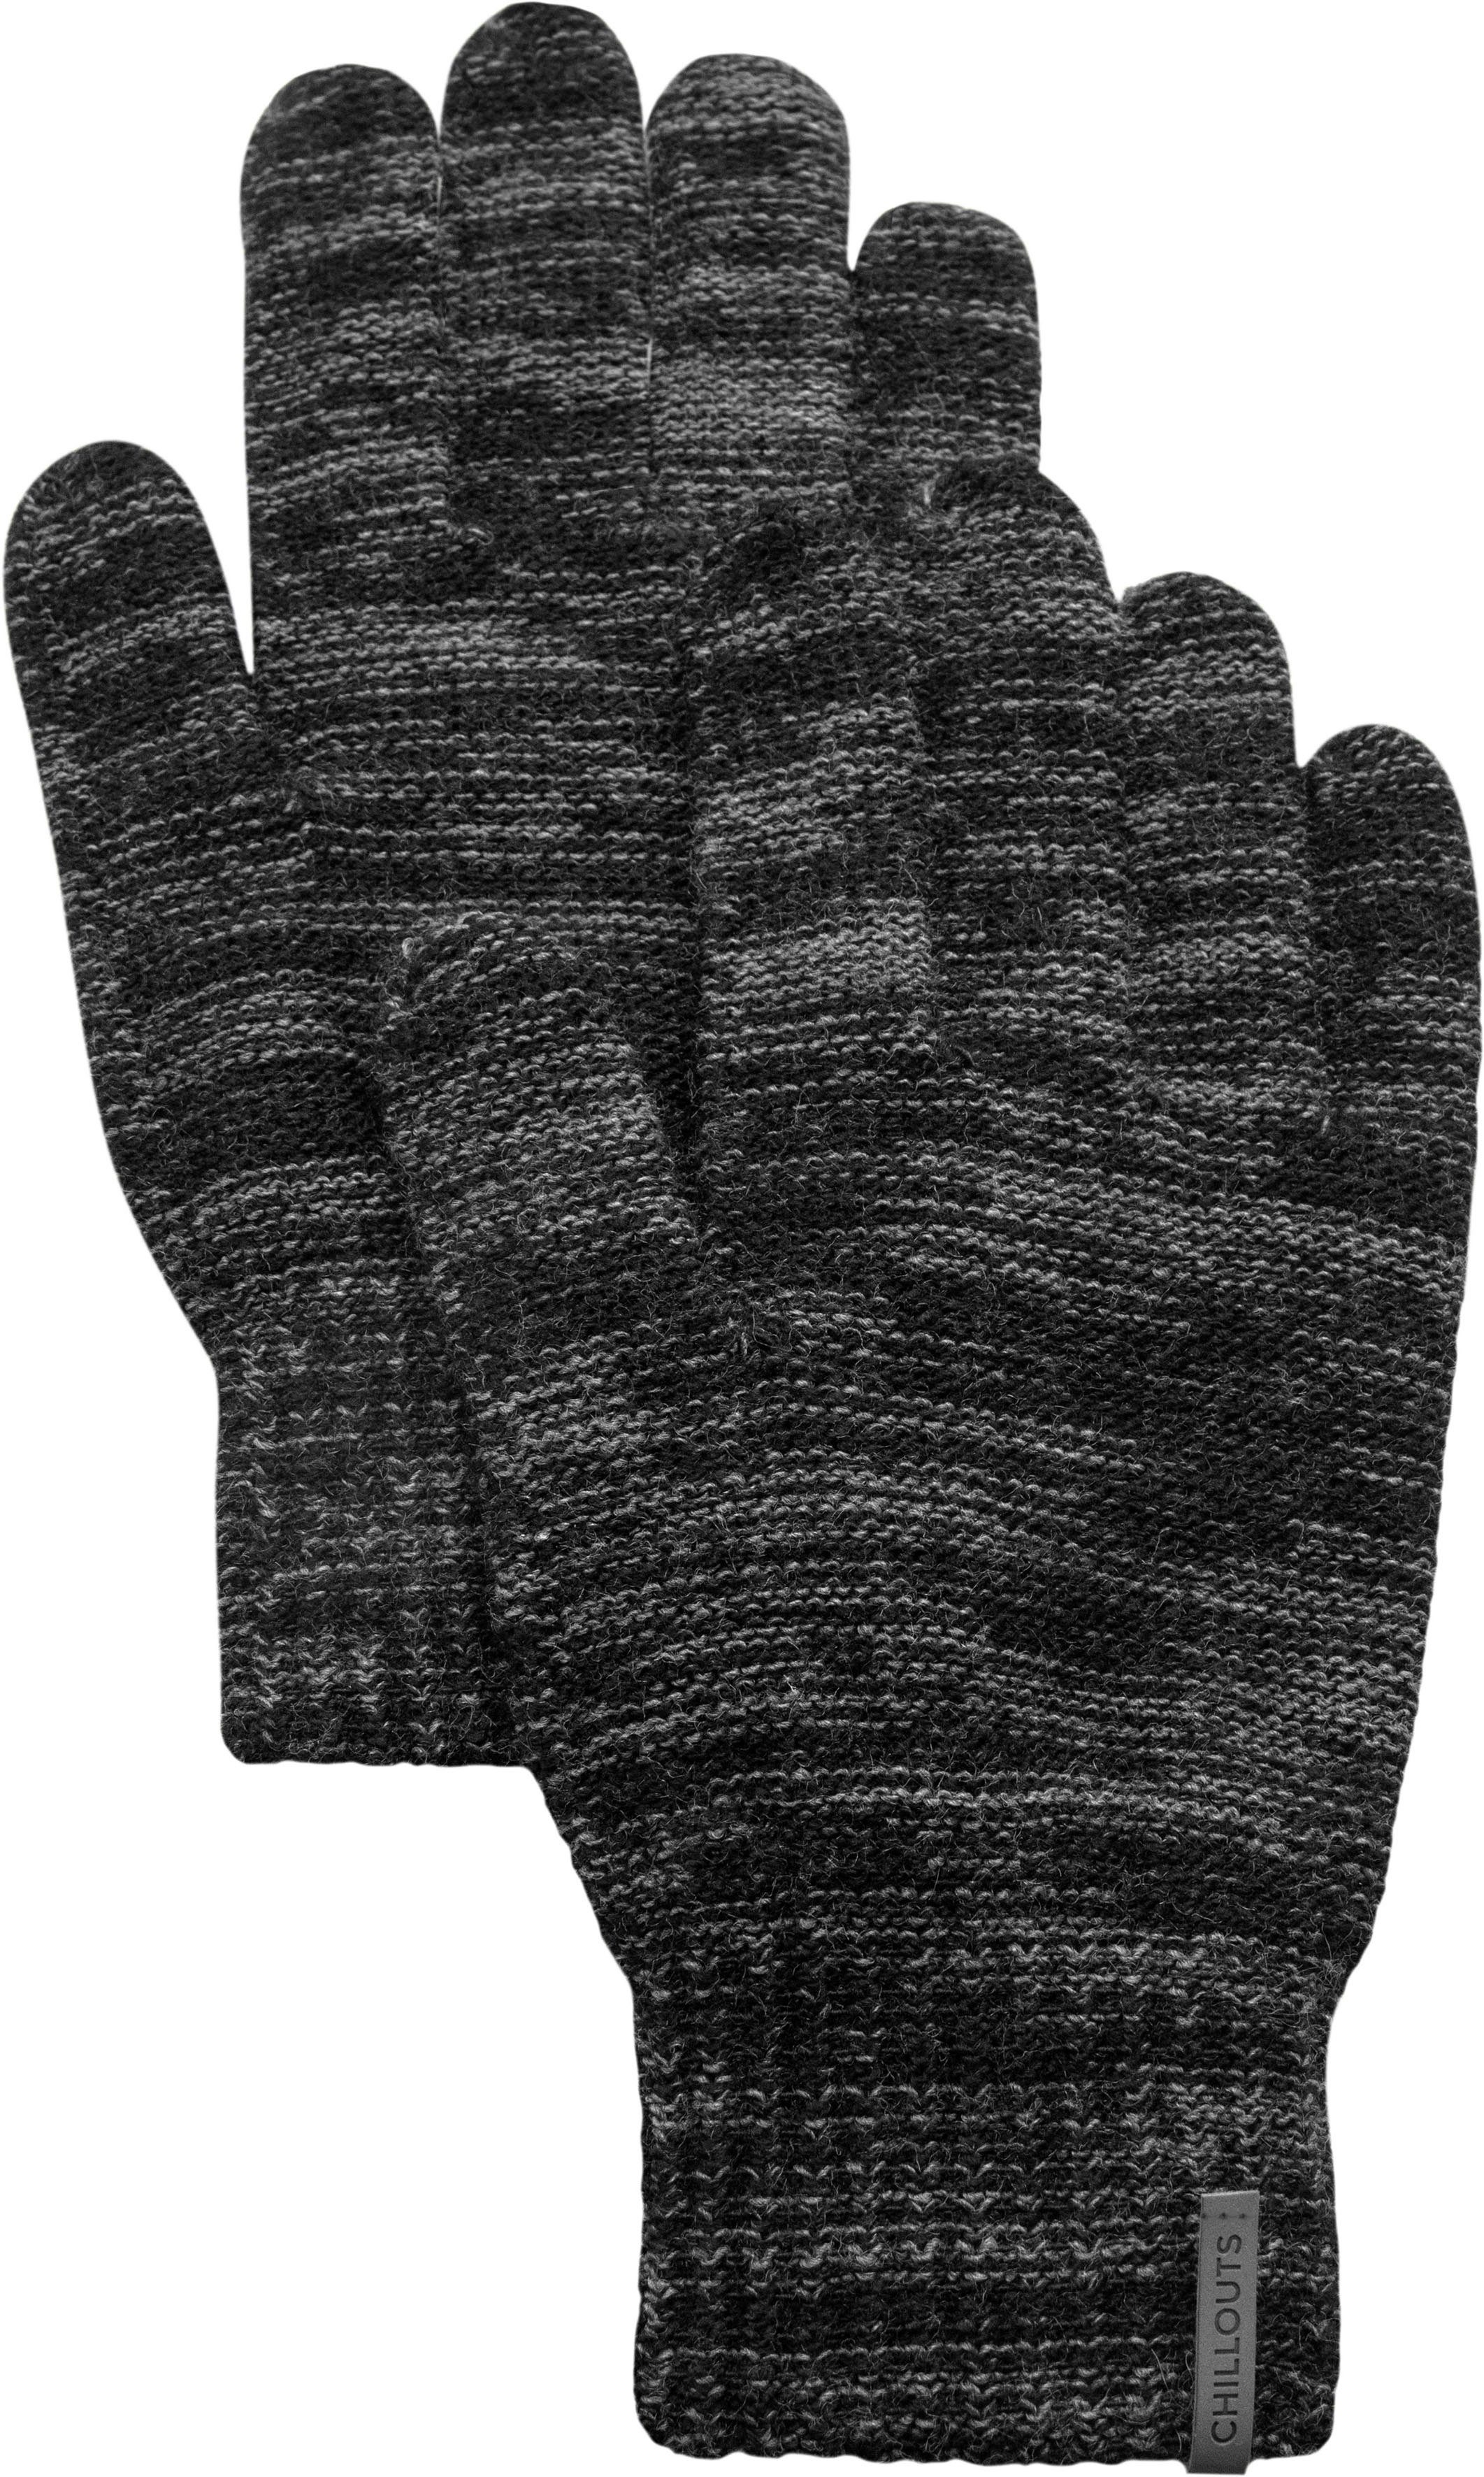 Günstige Preise Ben Strickhandschuhe chillouts Glove